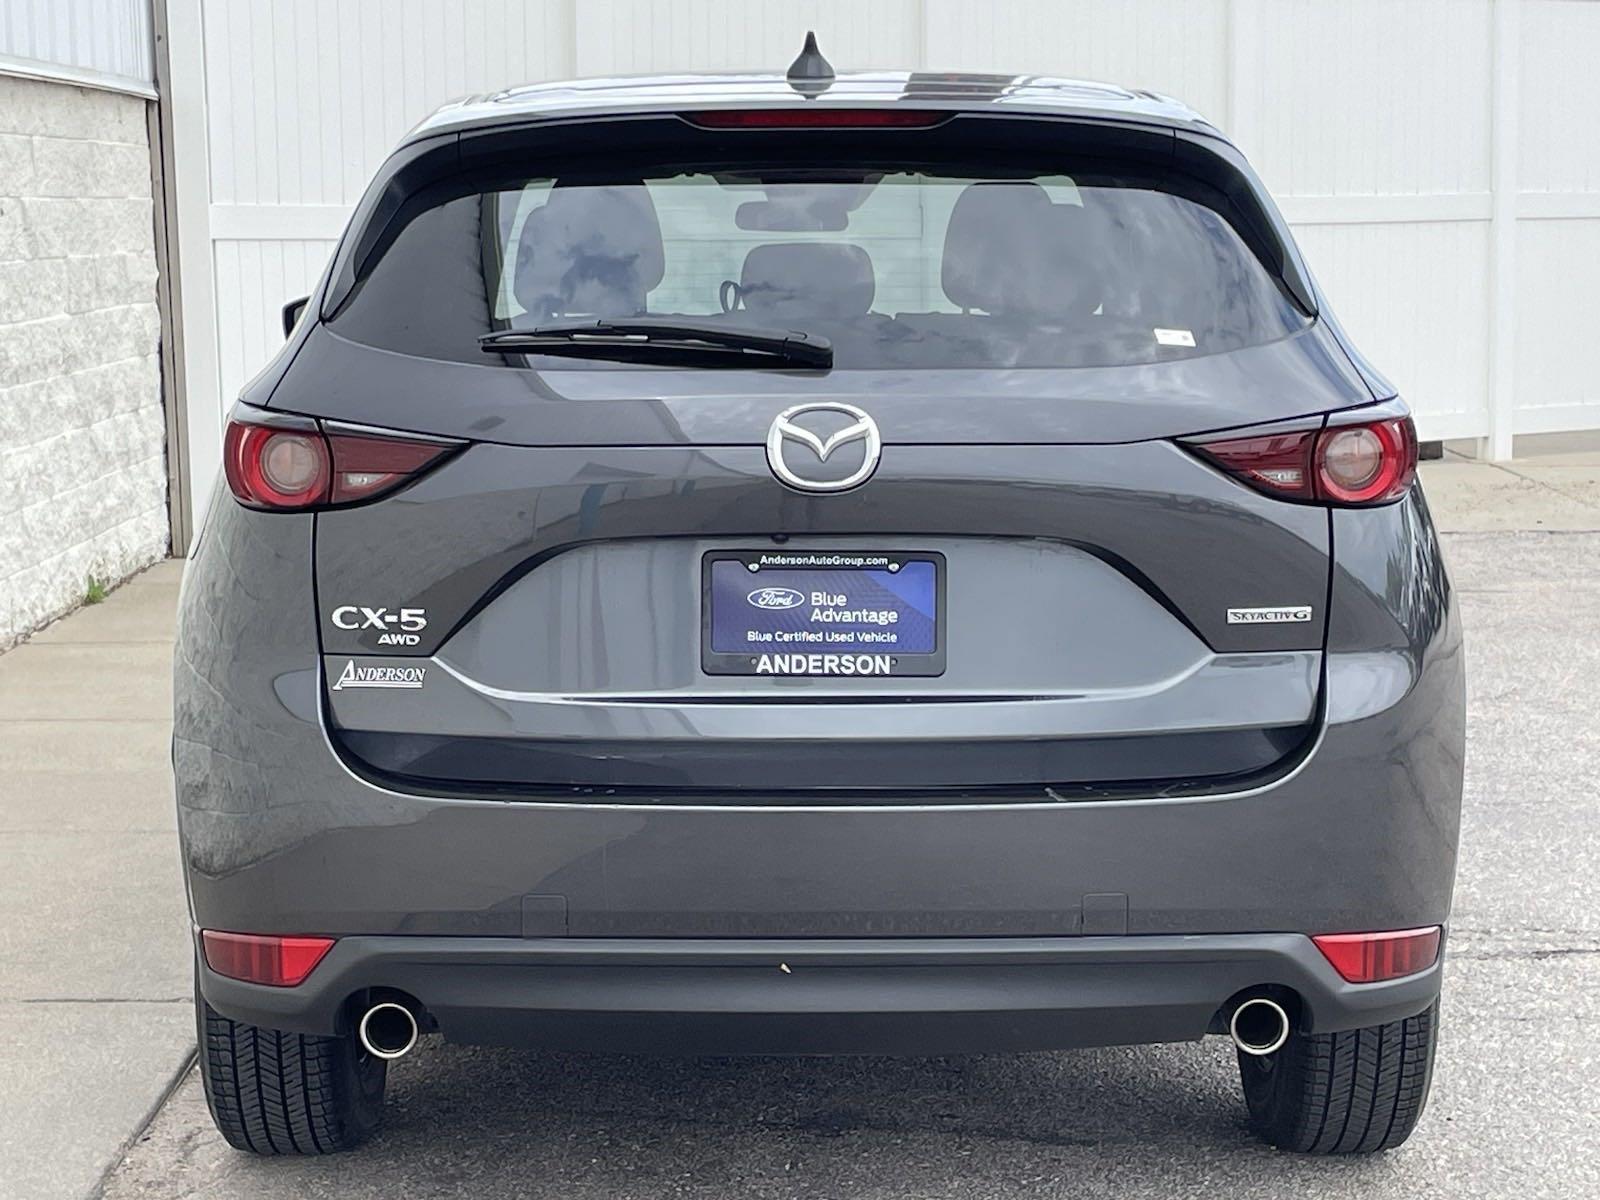 Used 2021 Mazda CX-5 Touring SUV for sale in Lincoln NE